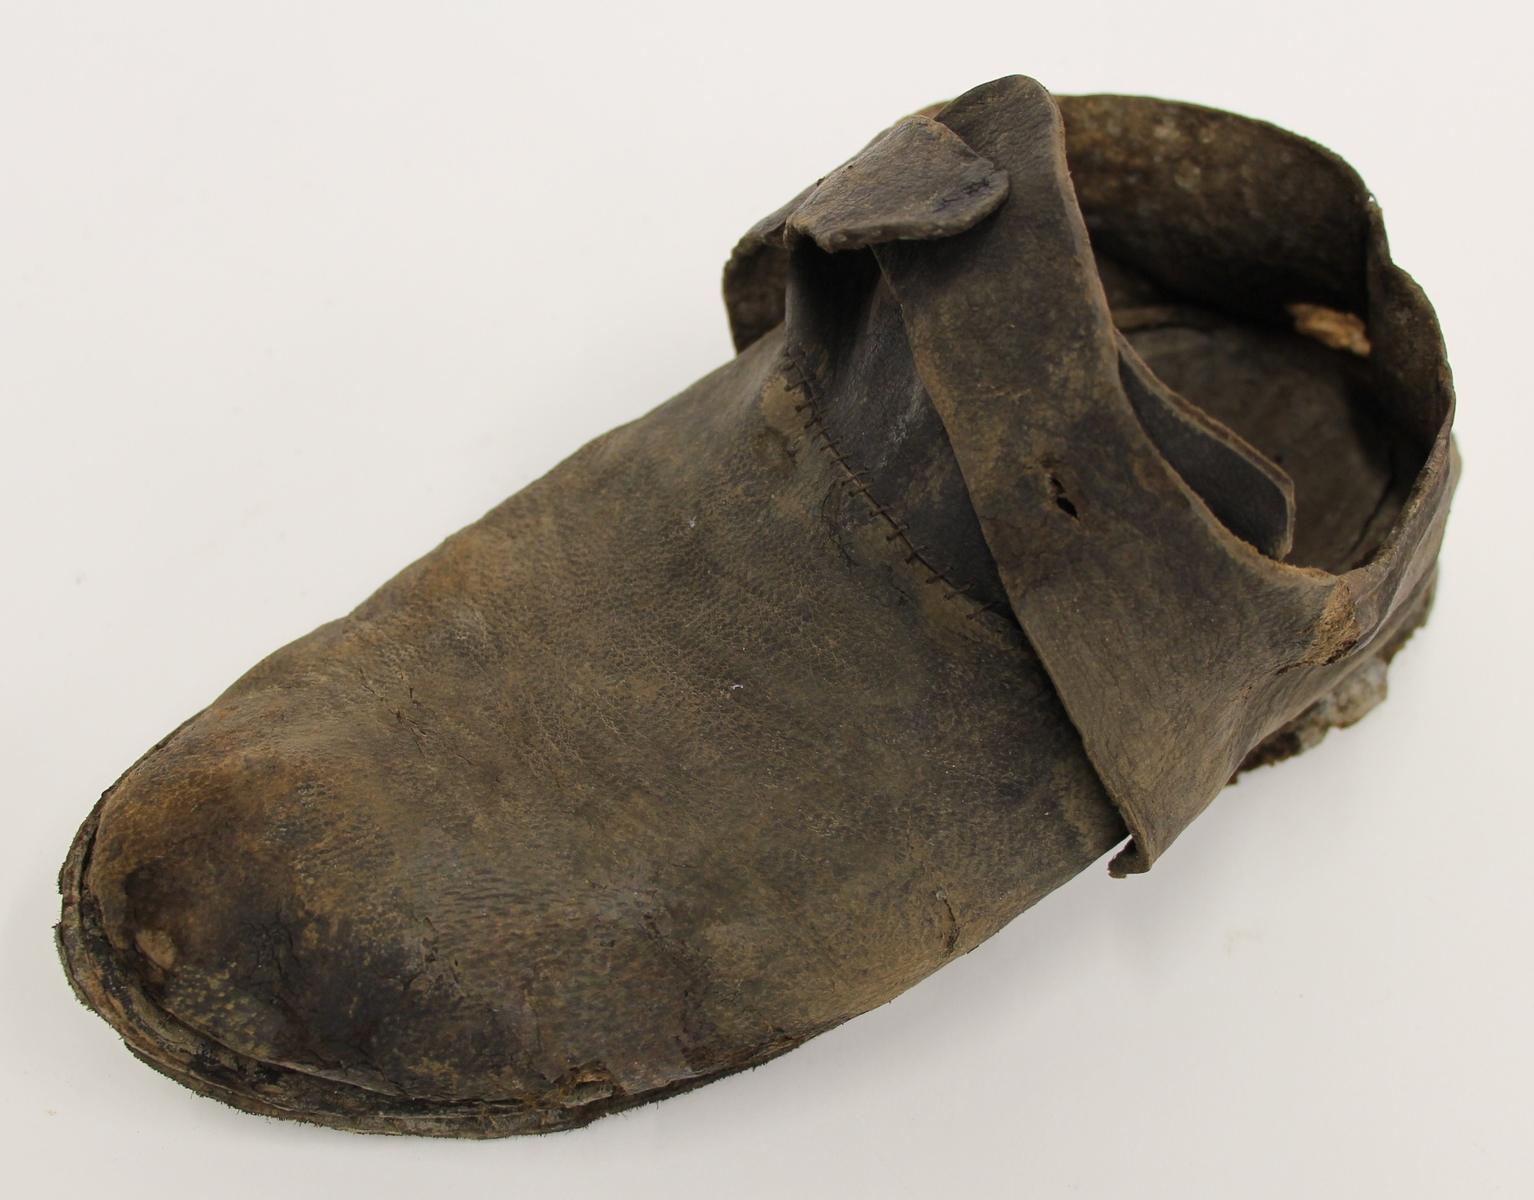 Photographie d'une chaussure découverte sur une épave après restauration